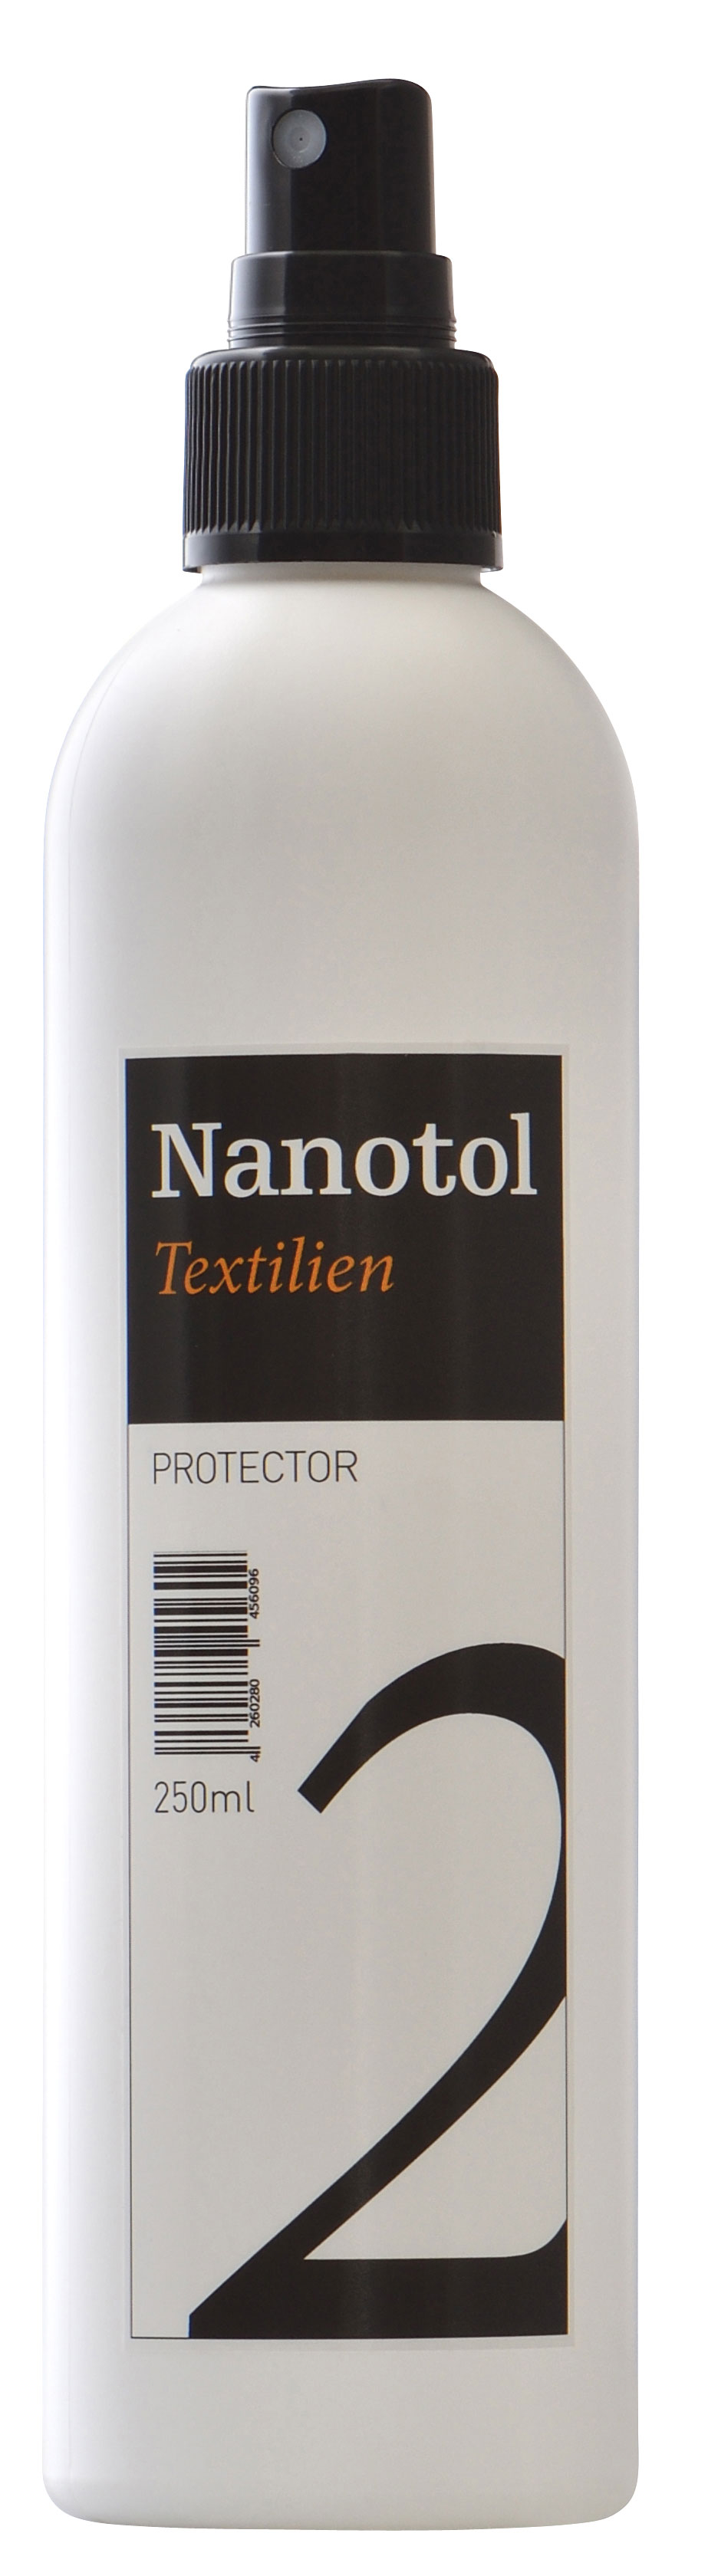 Nanotol Textilien Protector